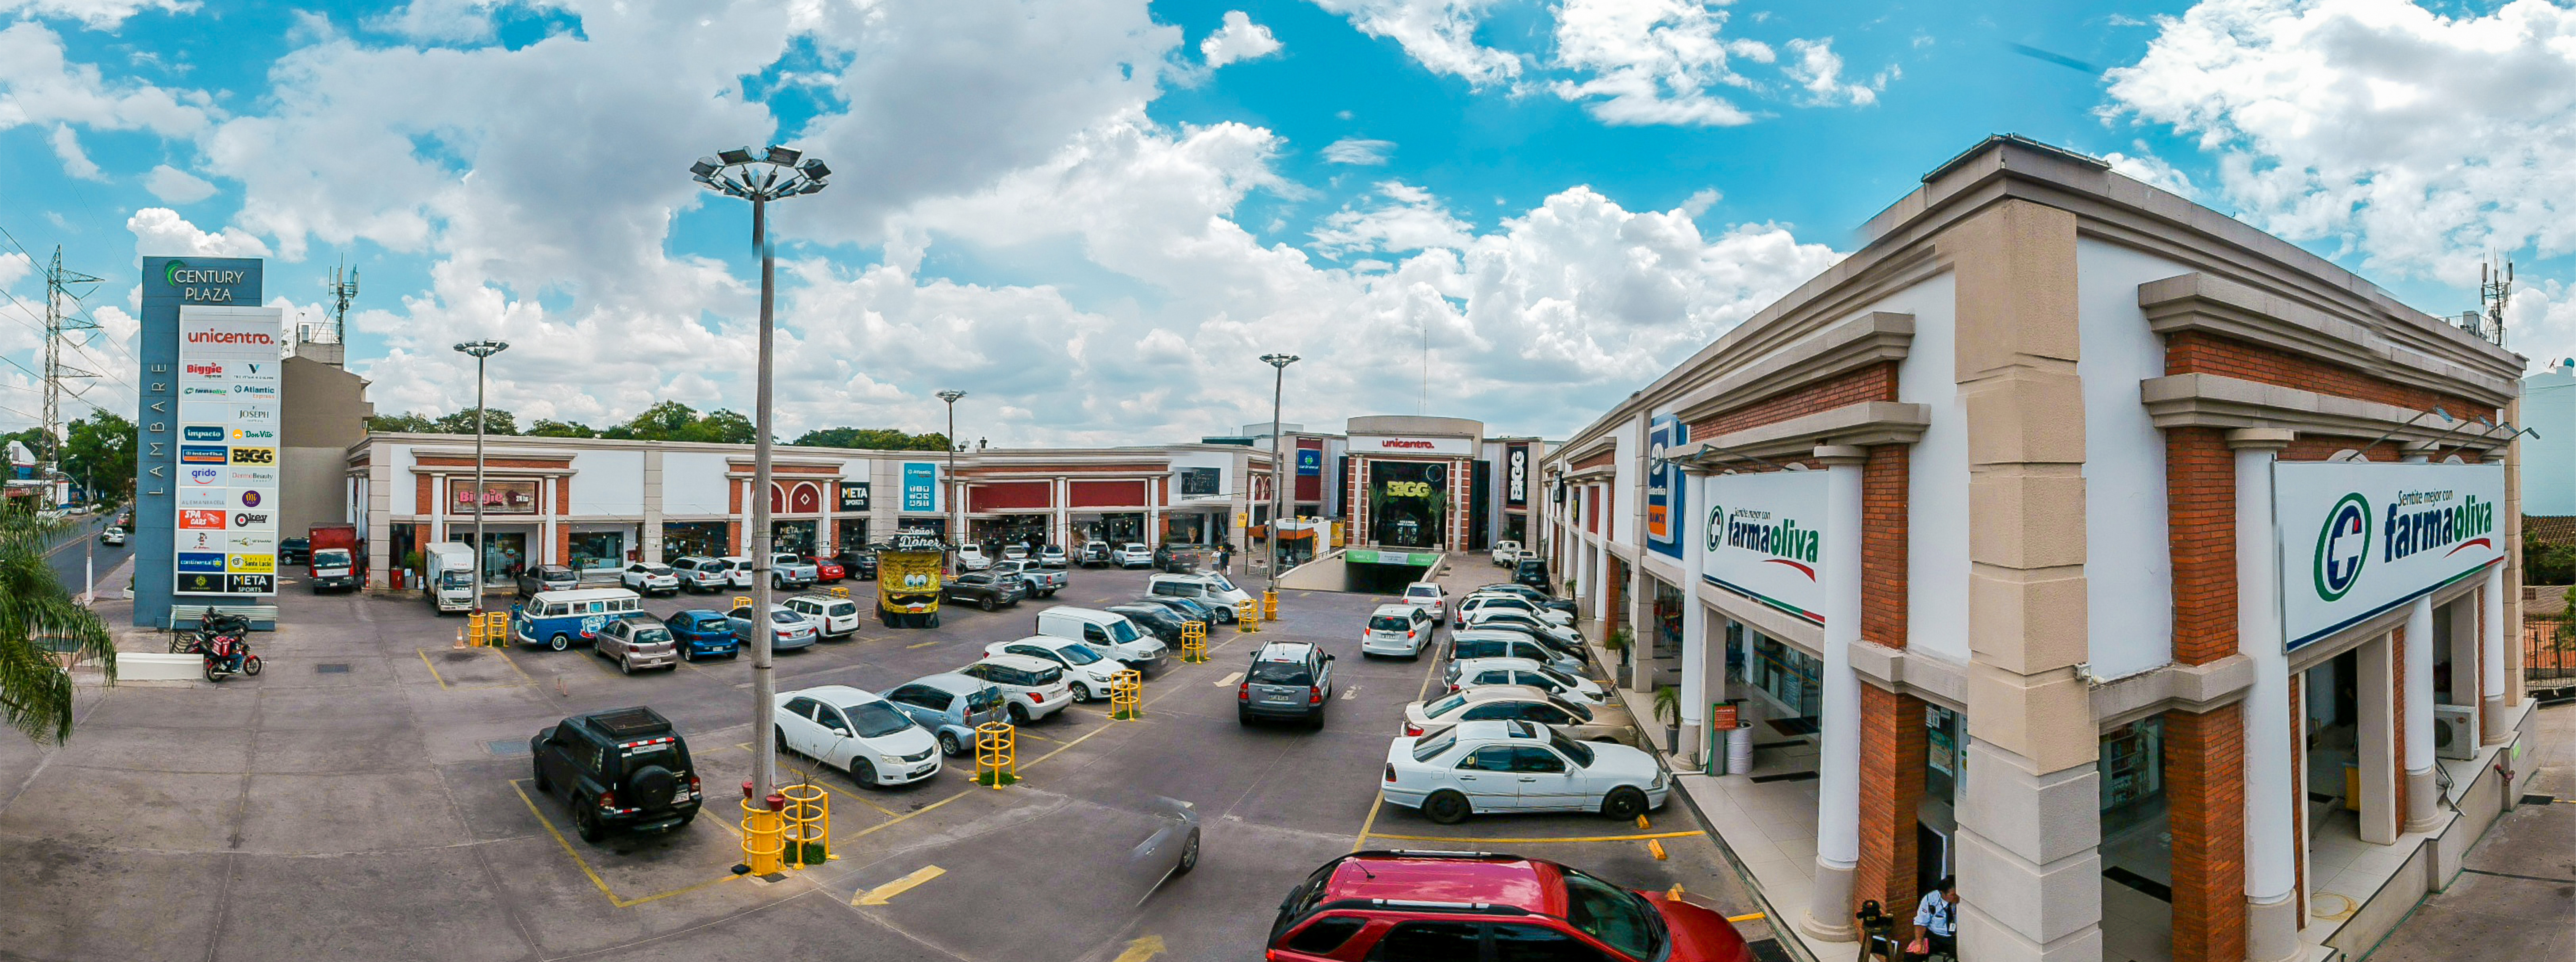 El Shopping Century Plaza está estratégicamente ubicado en Lambaré. Foto: Gentileza.